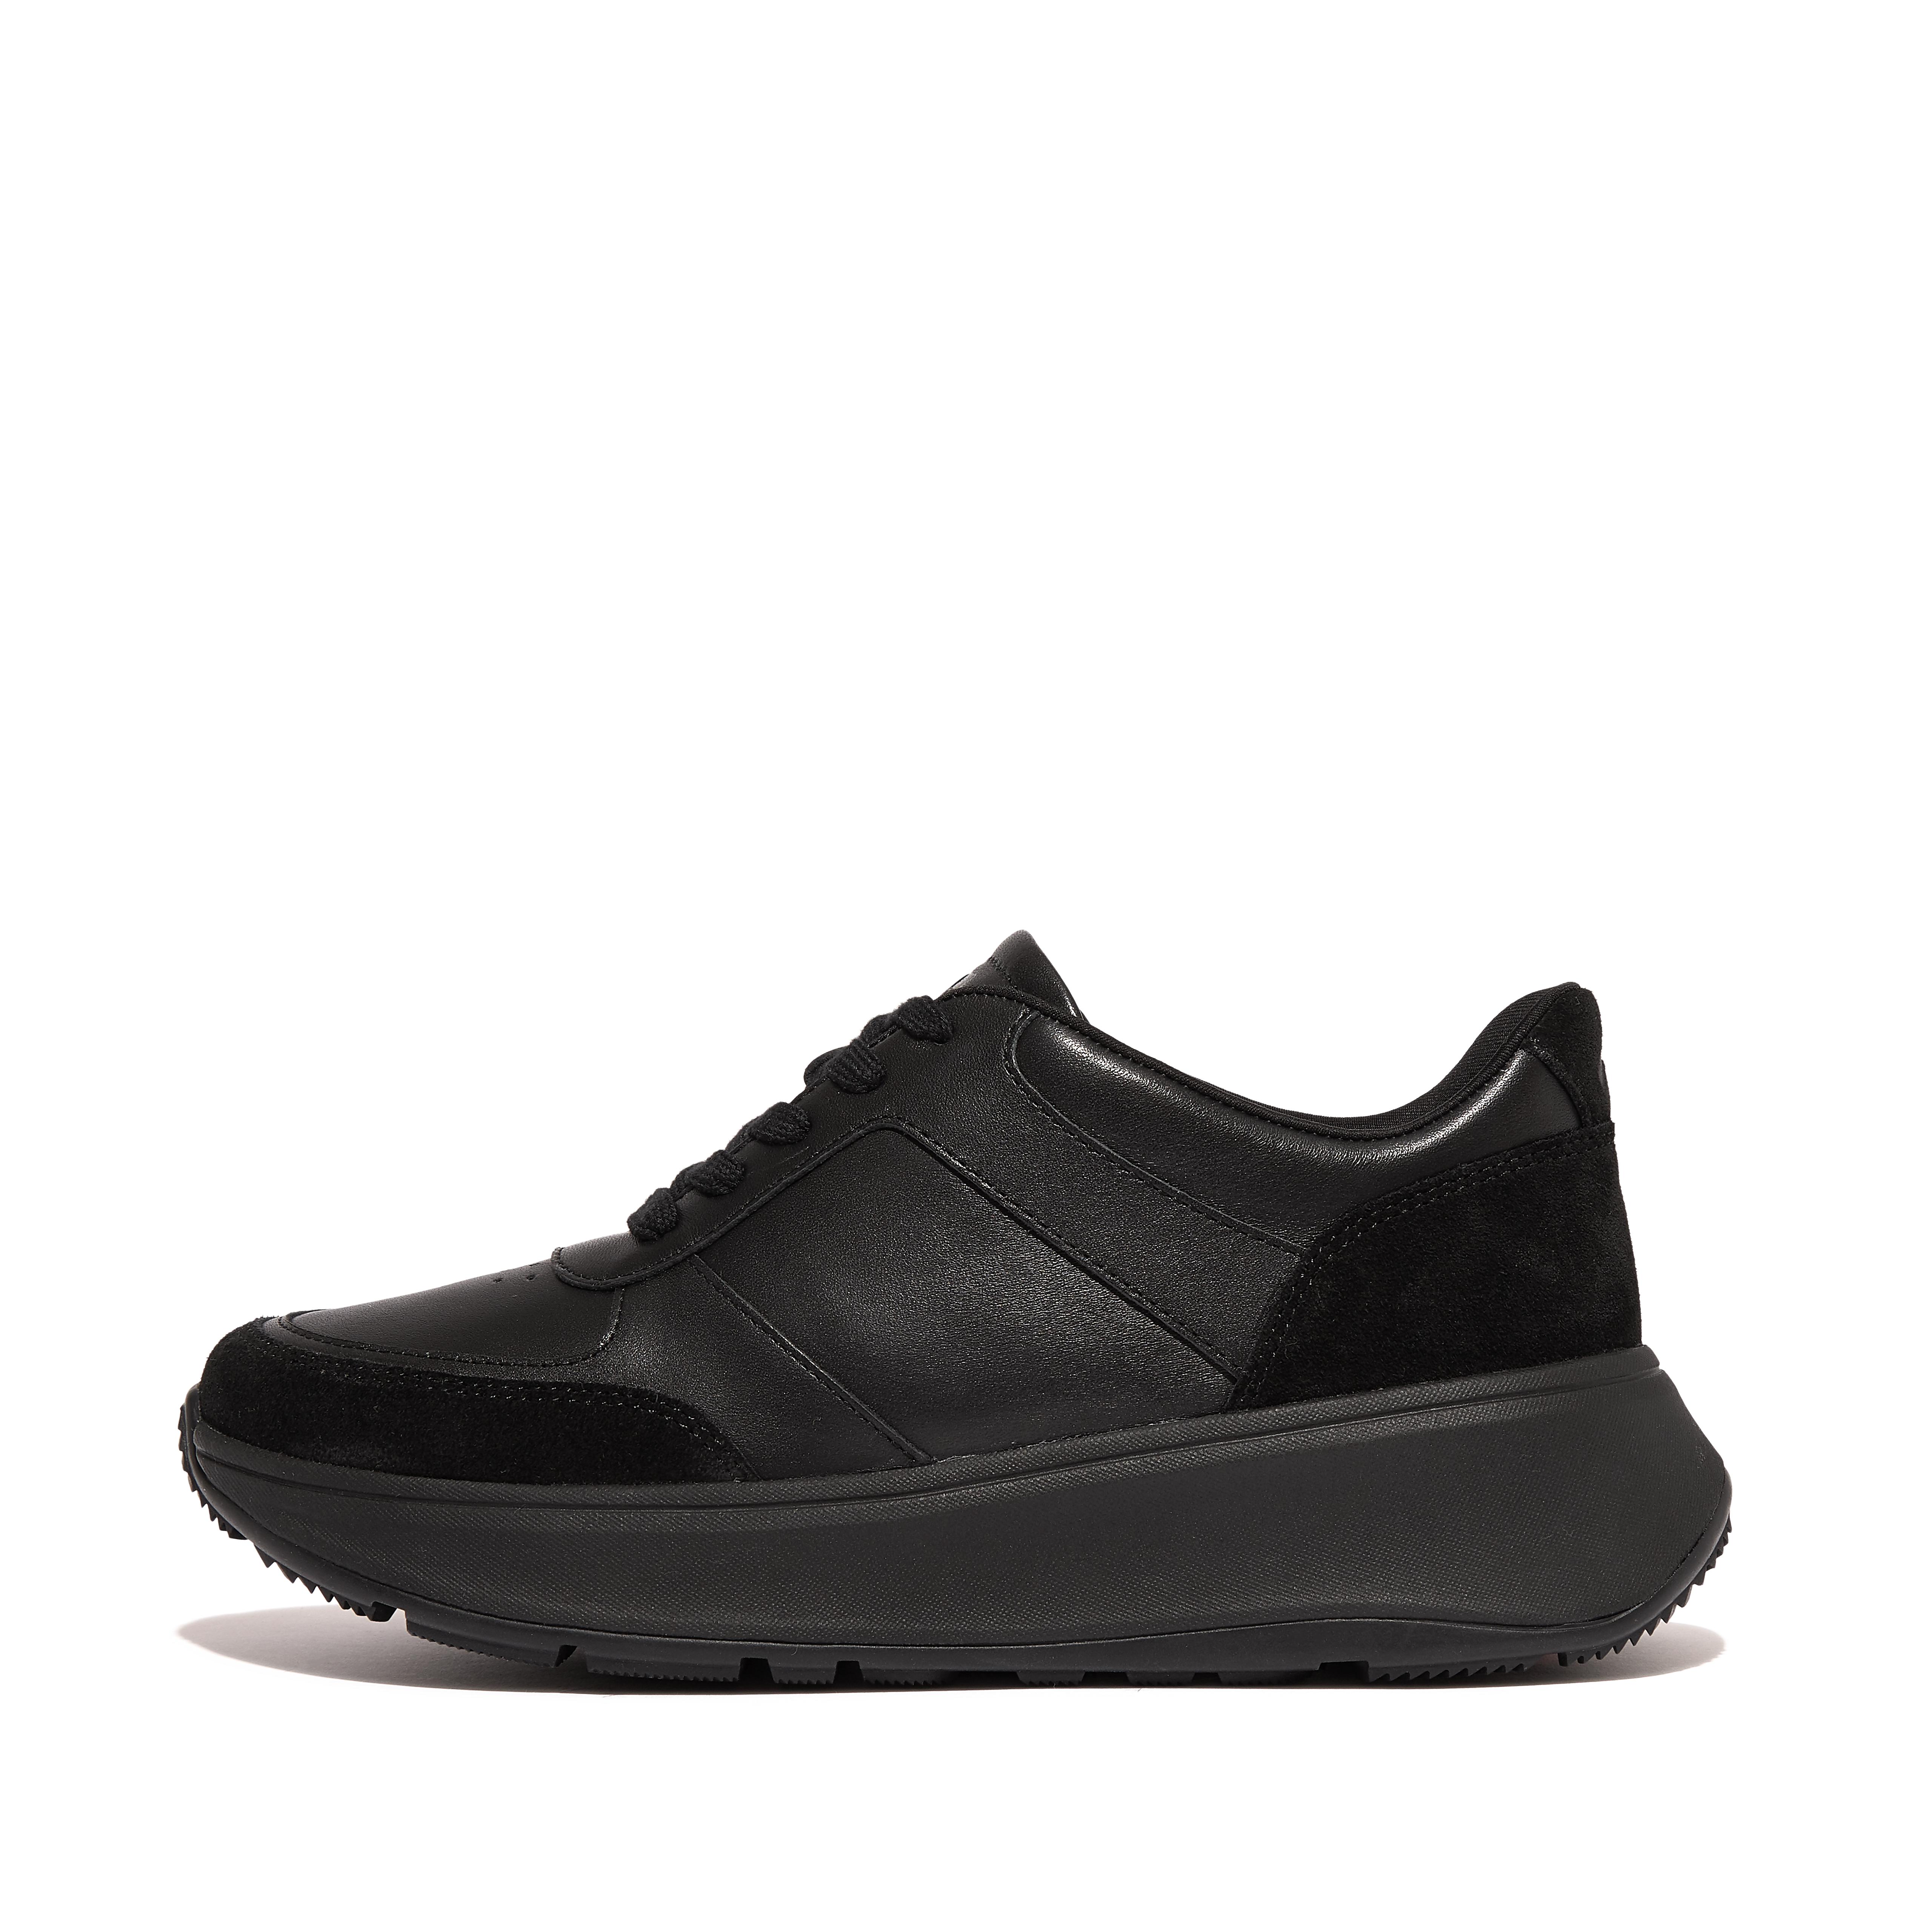 핏플랍 Fitflop Leather/Suede Flatform Sneakers,All Black